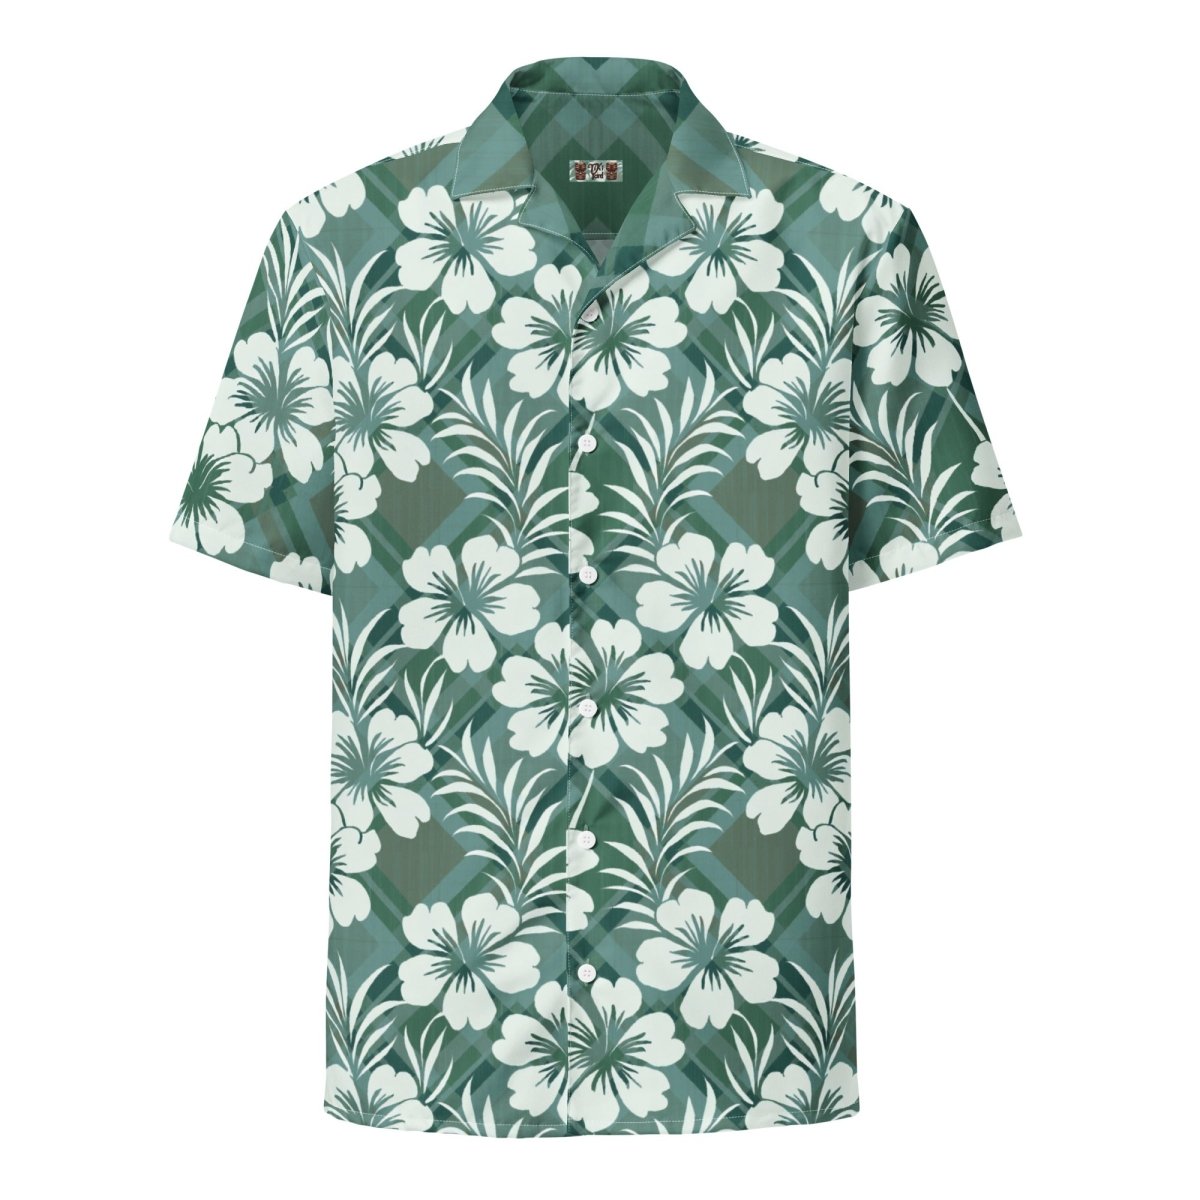 Island Phantom - Hawaiian Shirt - The Tiki Yard - Men's Hawaiian Shirt